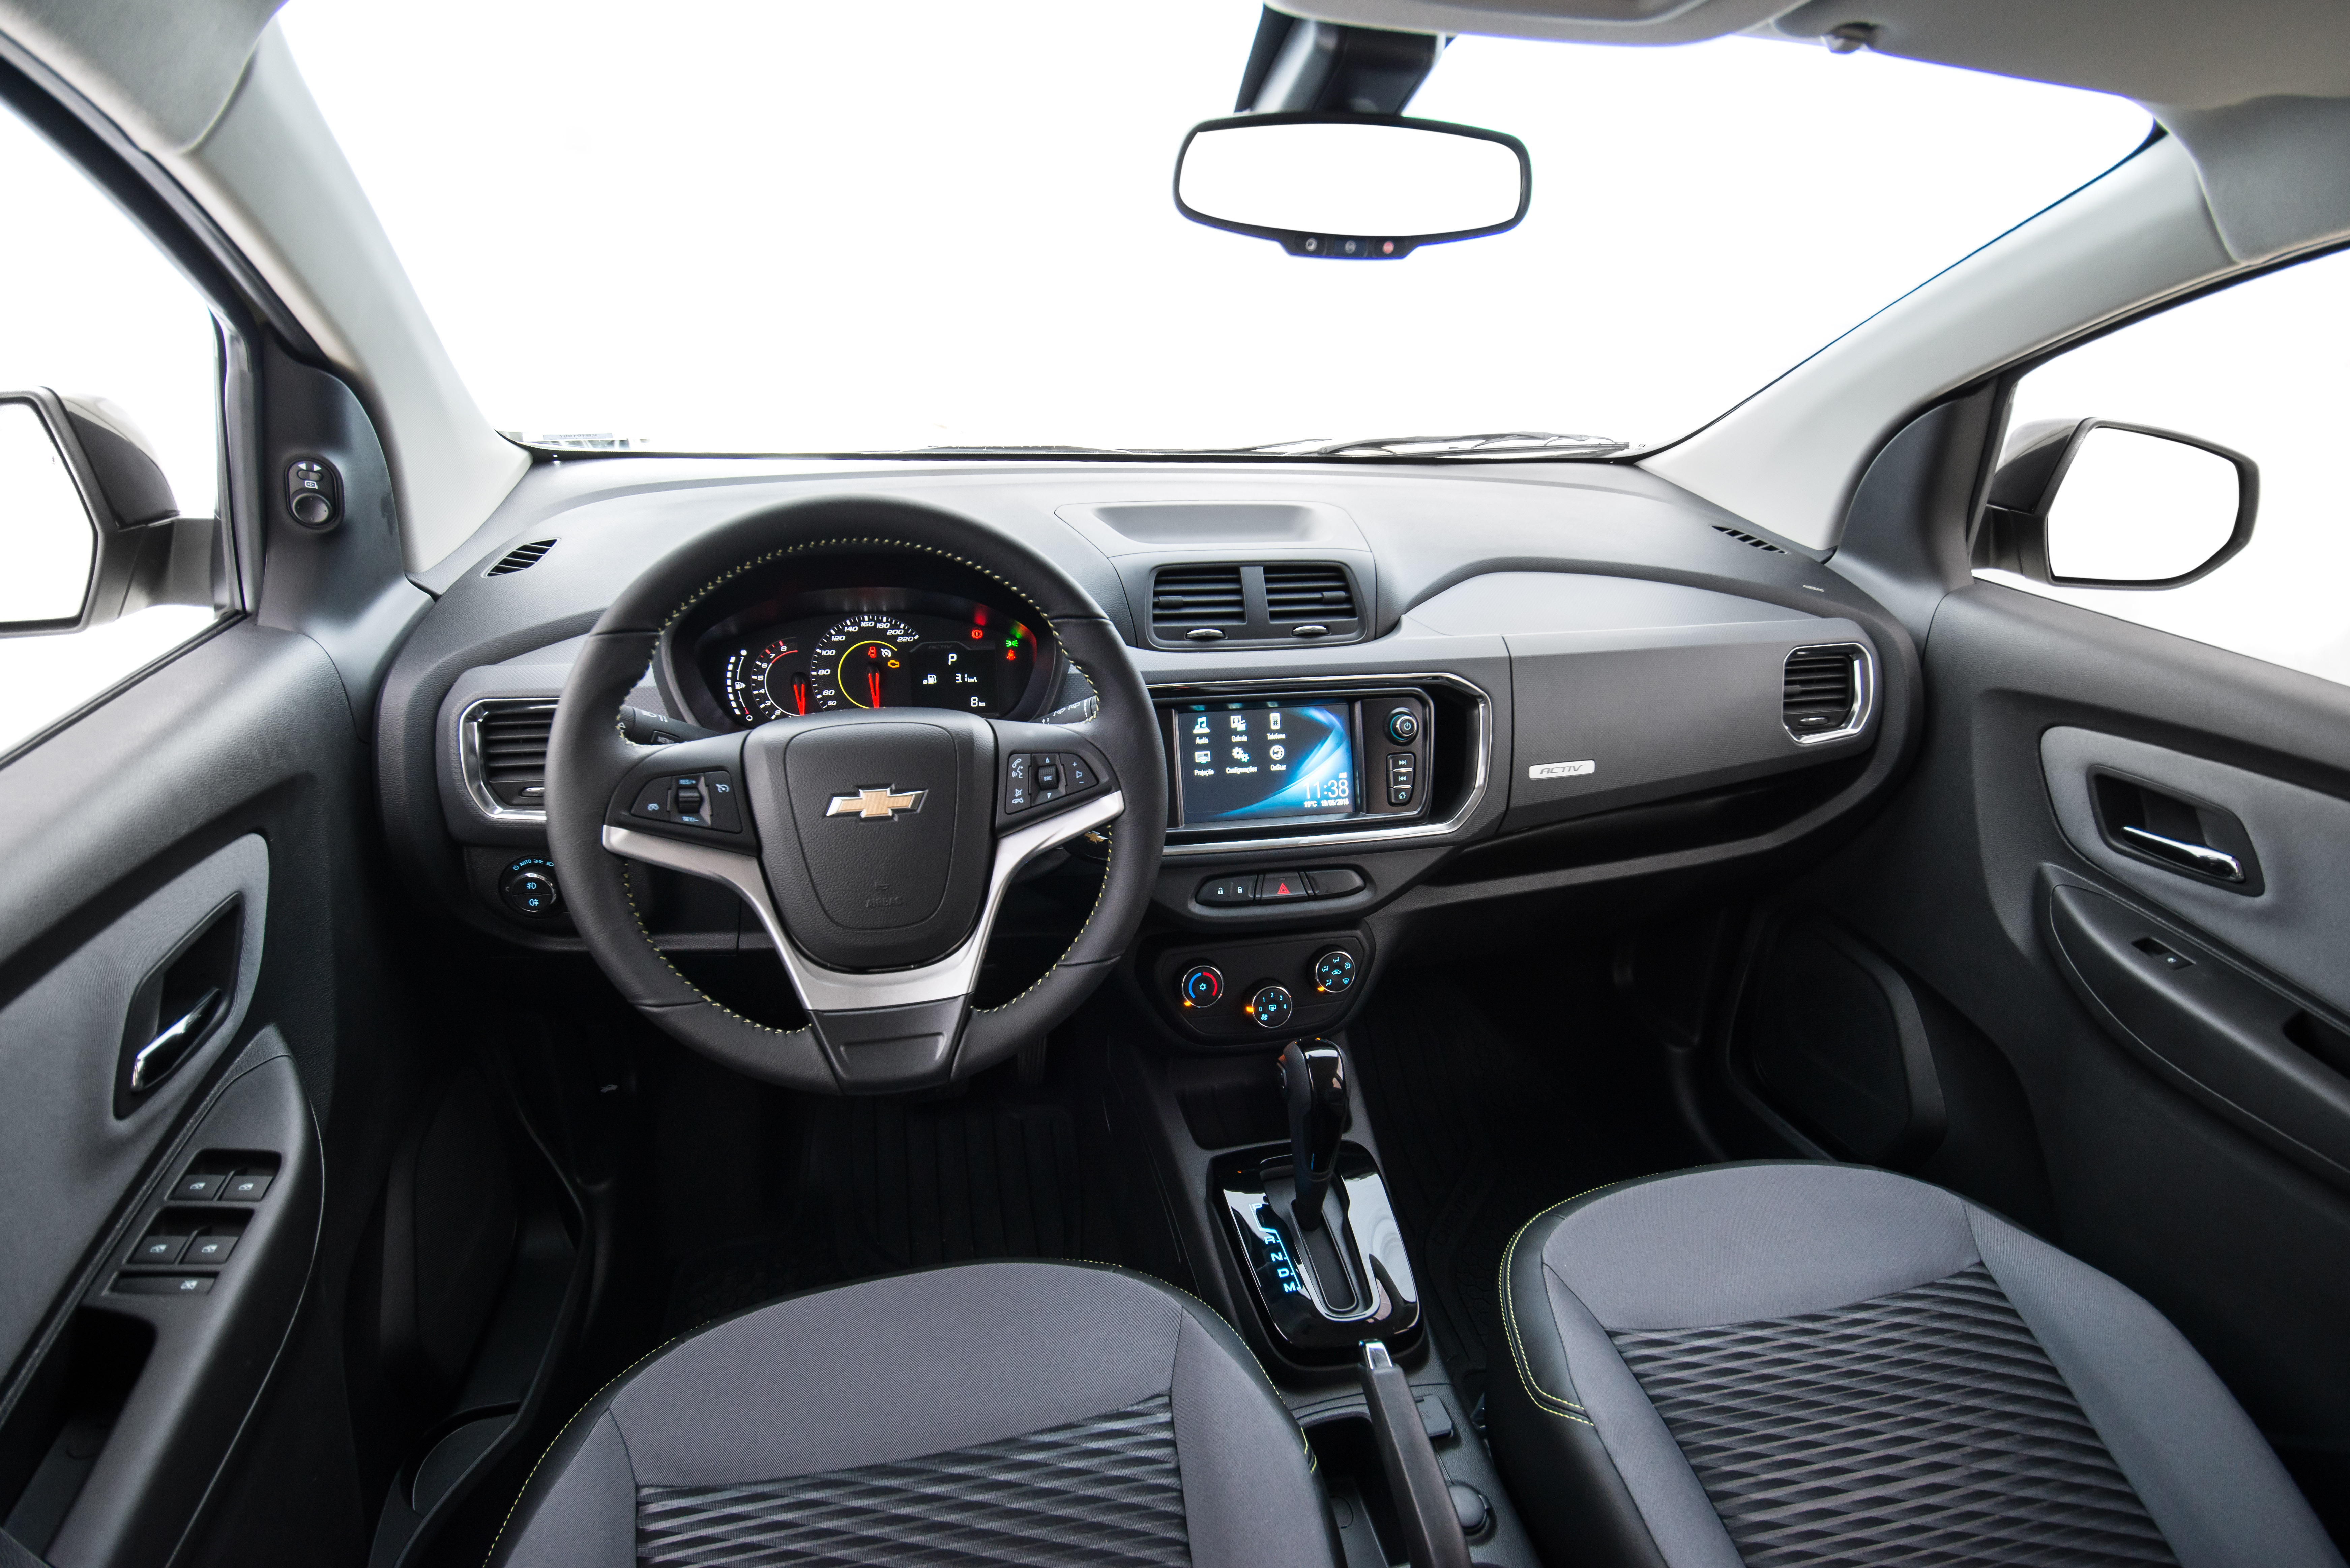  Cromados ganharam mais destaque no novo acabamento interno da Chevrolet Spin Activ 2019